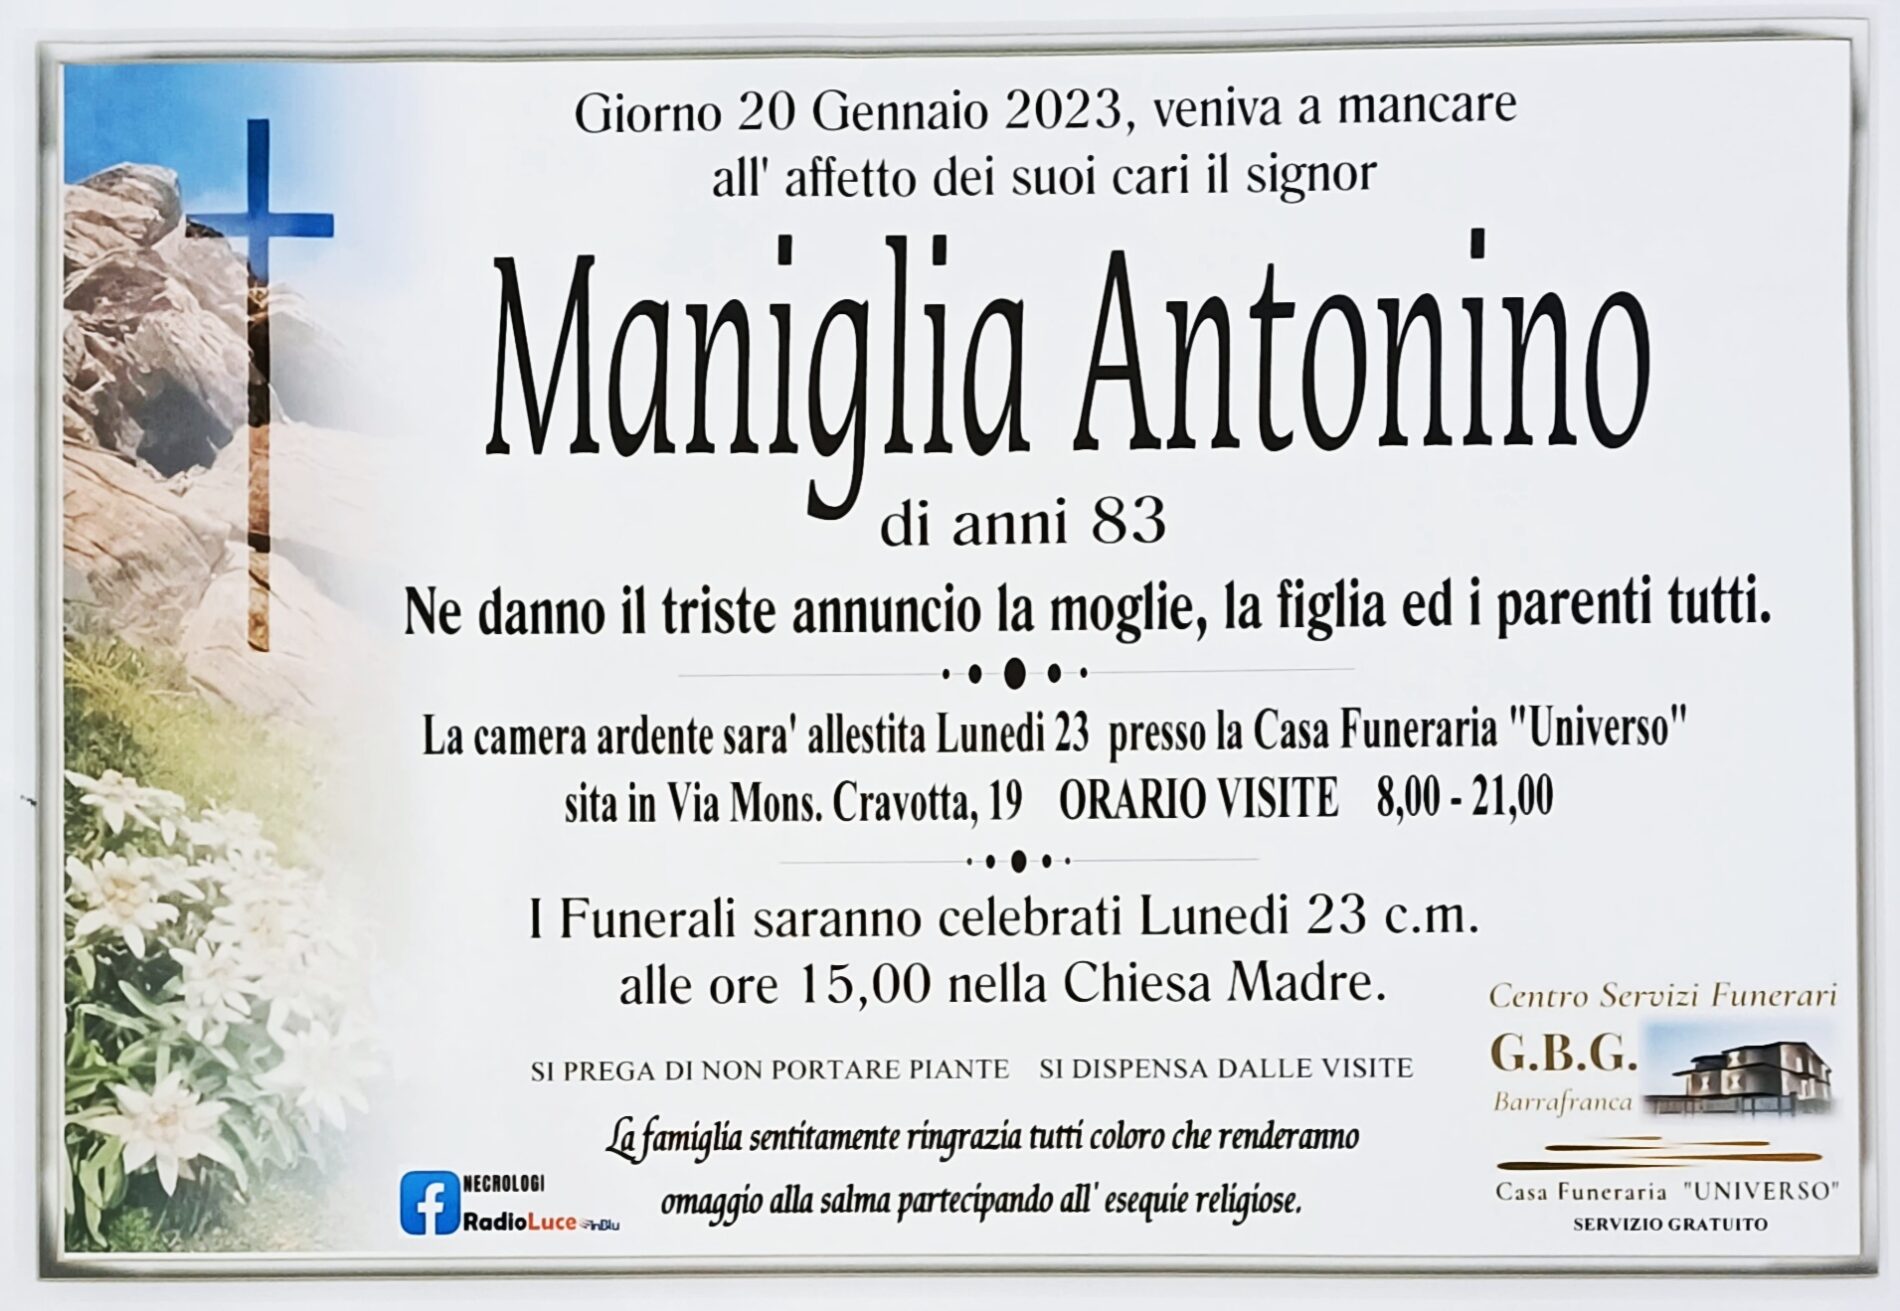 Annuncio servizi funerari agenzia G.B.G. sig. Antonino Maniglia di anni 83